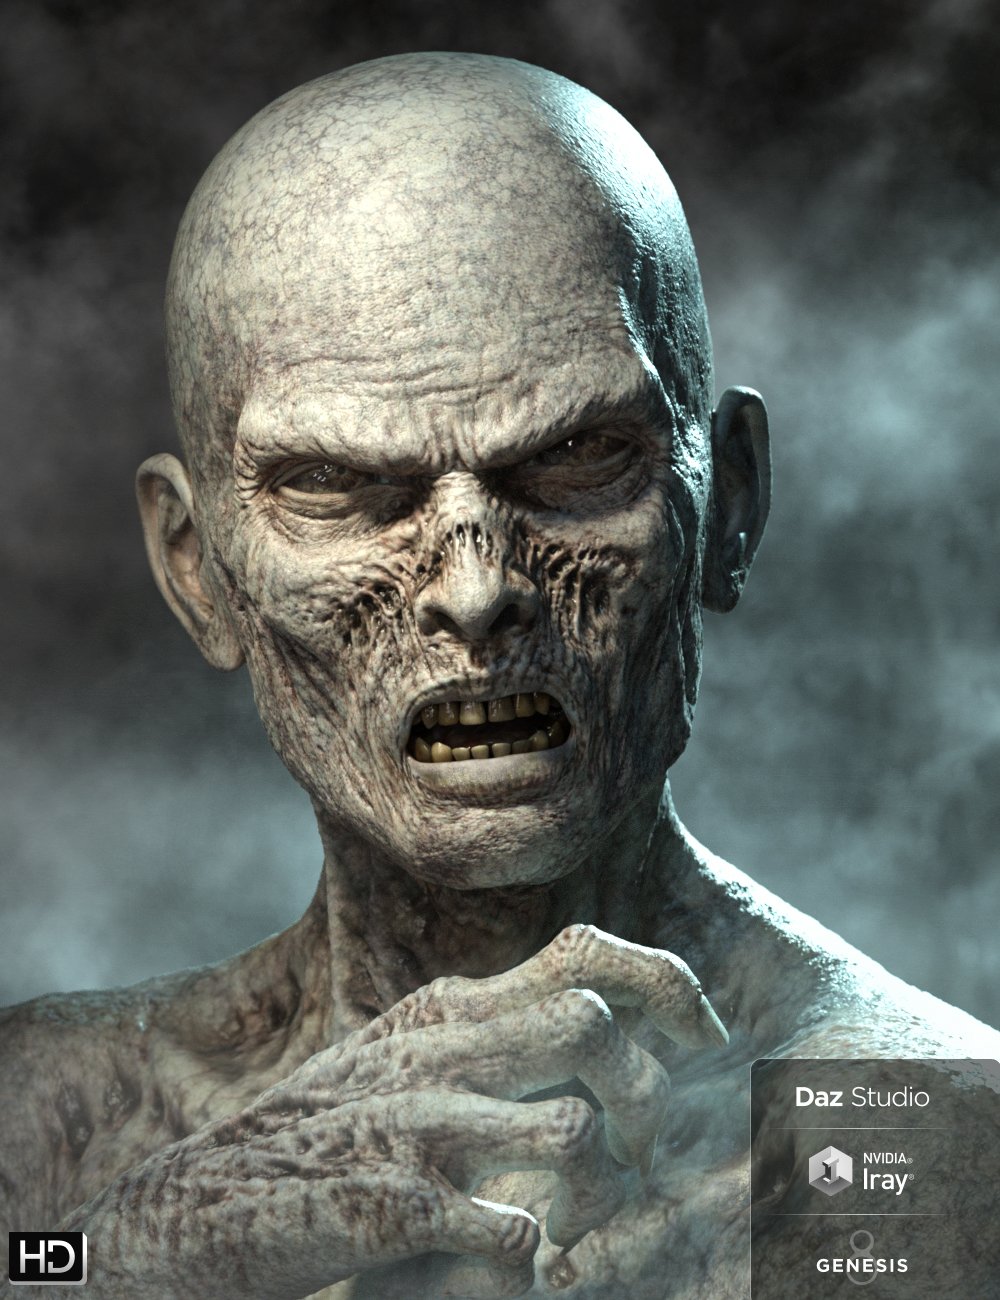 Ultimate Zombie HD for Genesis 8 Male by: Groovy Patrol, 3D Models by Daz 3D